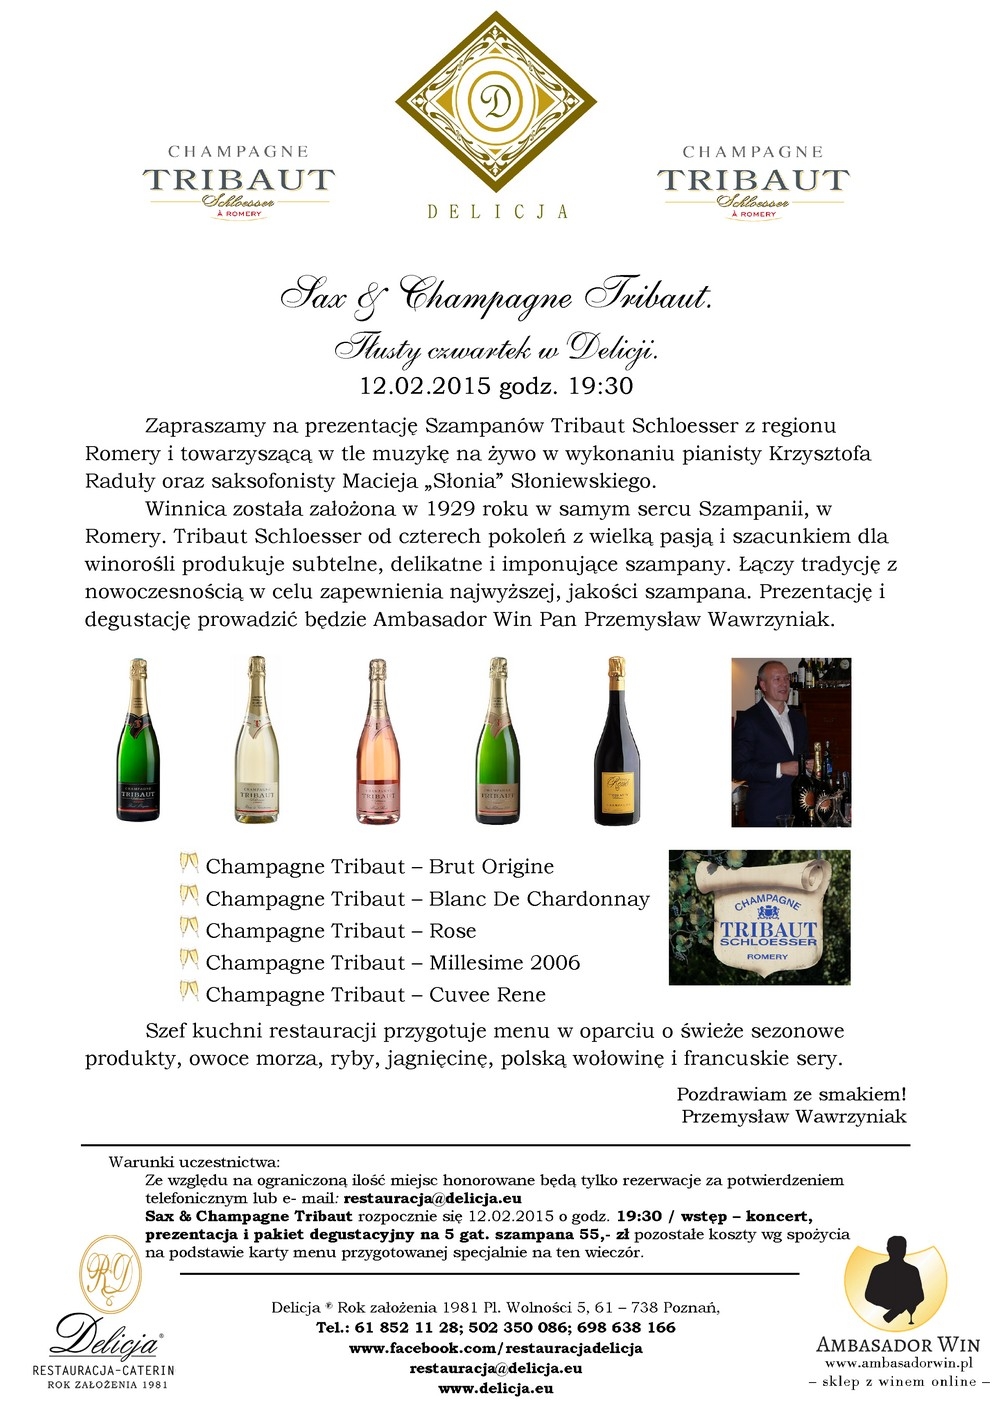 Sax & Champagne Tribaut - Tłusty czwartek w Delicji.